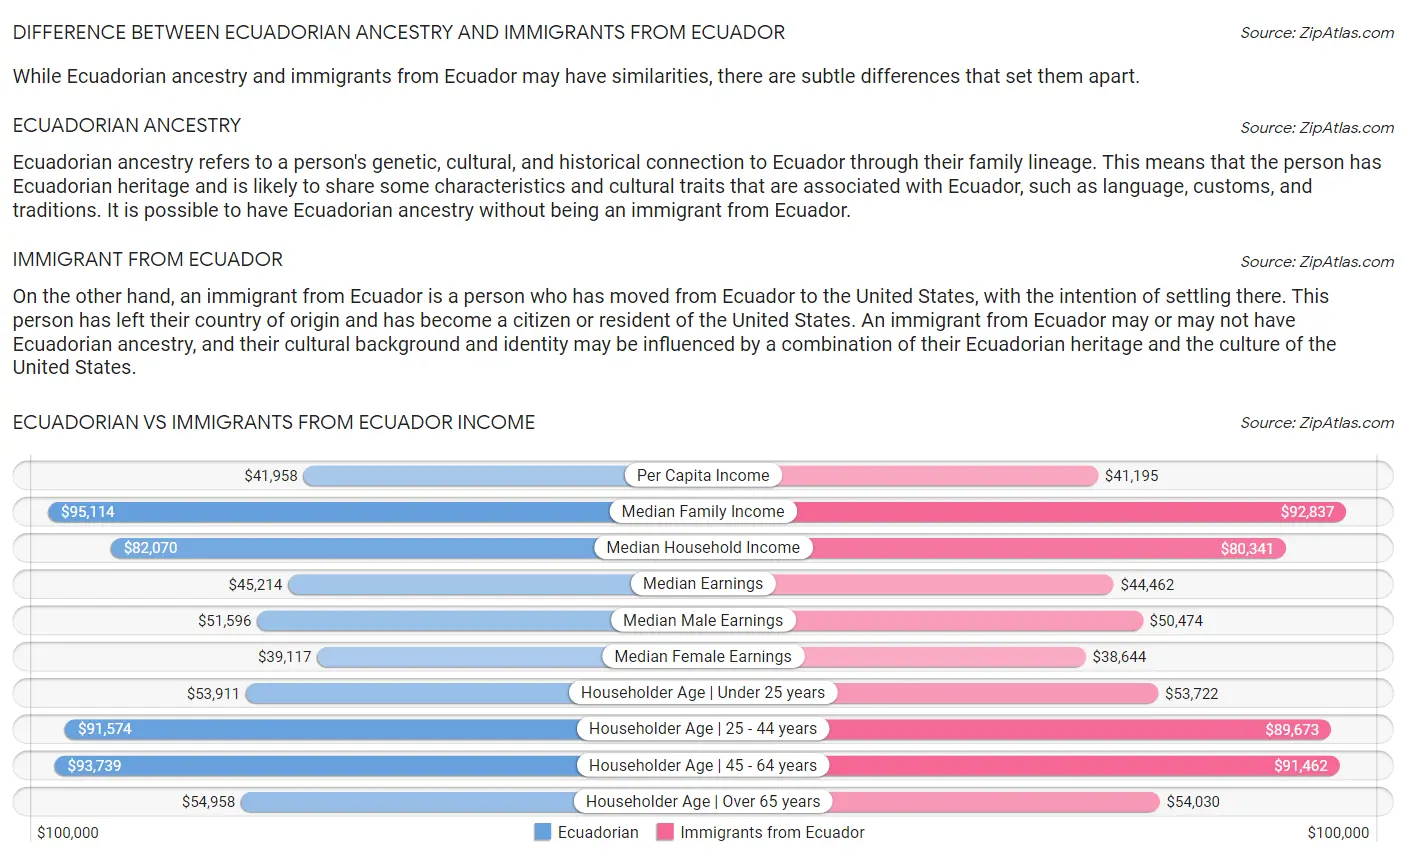 Ecuadorian vs Immigrants from Ecuador Income